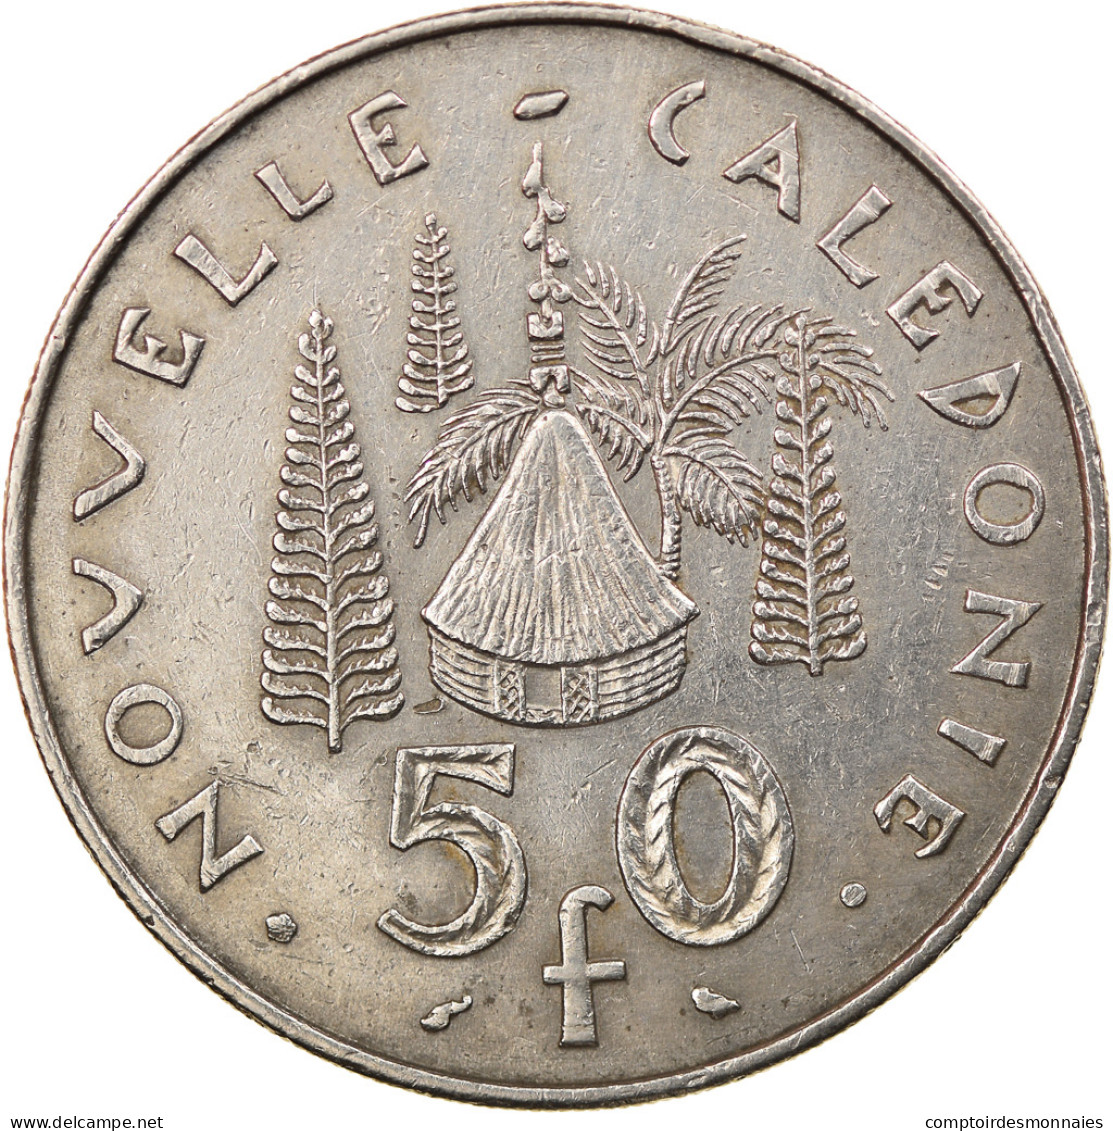 Monnaie, Nouvelle-Calédonie, 50 Francs, 1972, Paris, TTB, Nickel, KM:13 - Neu-Kaledonien